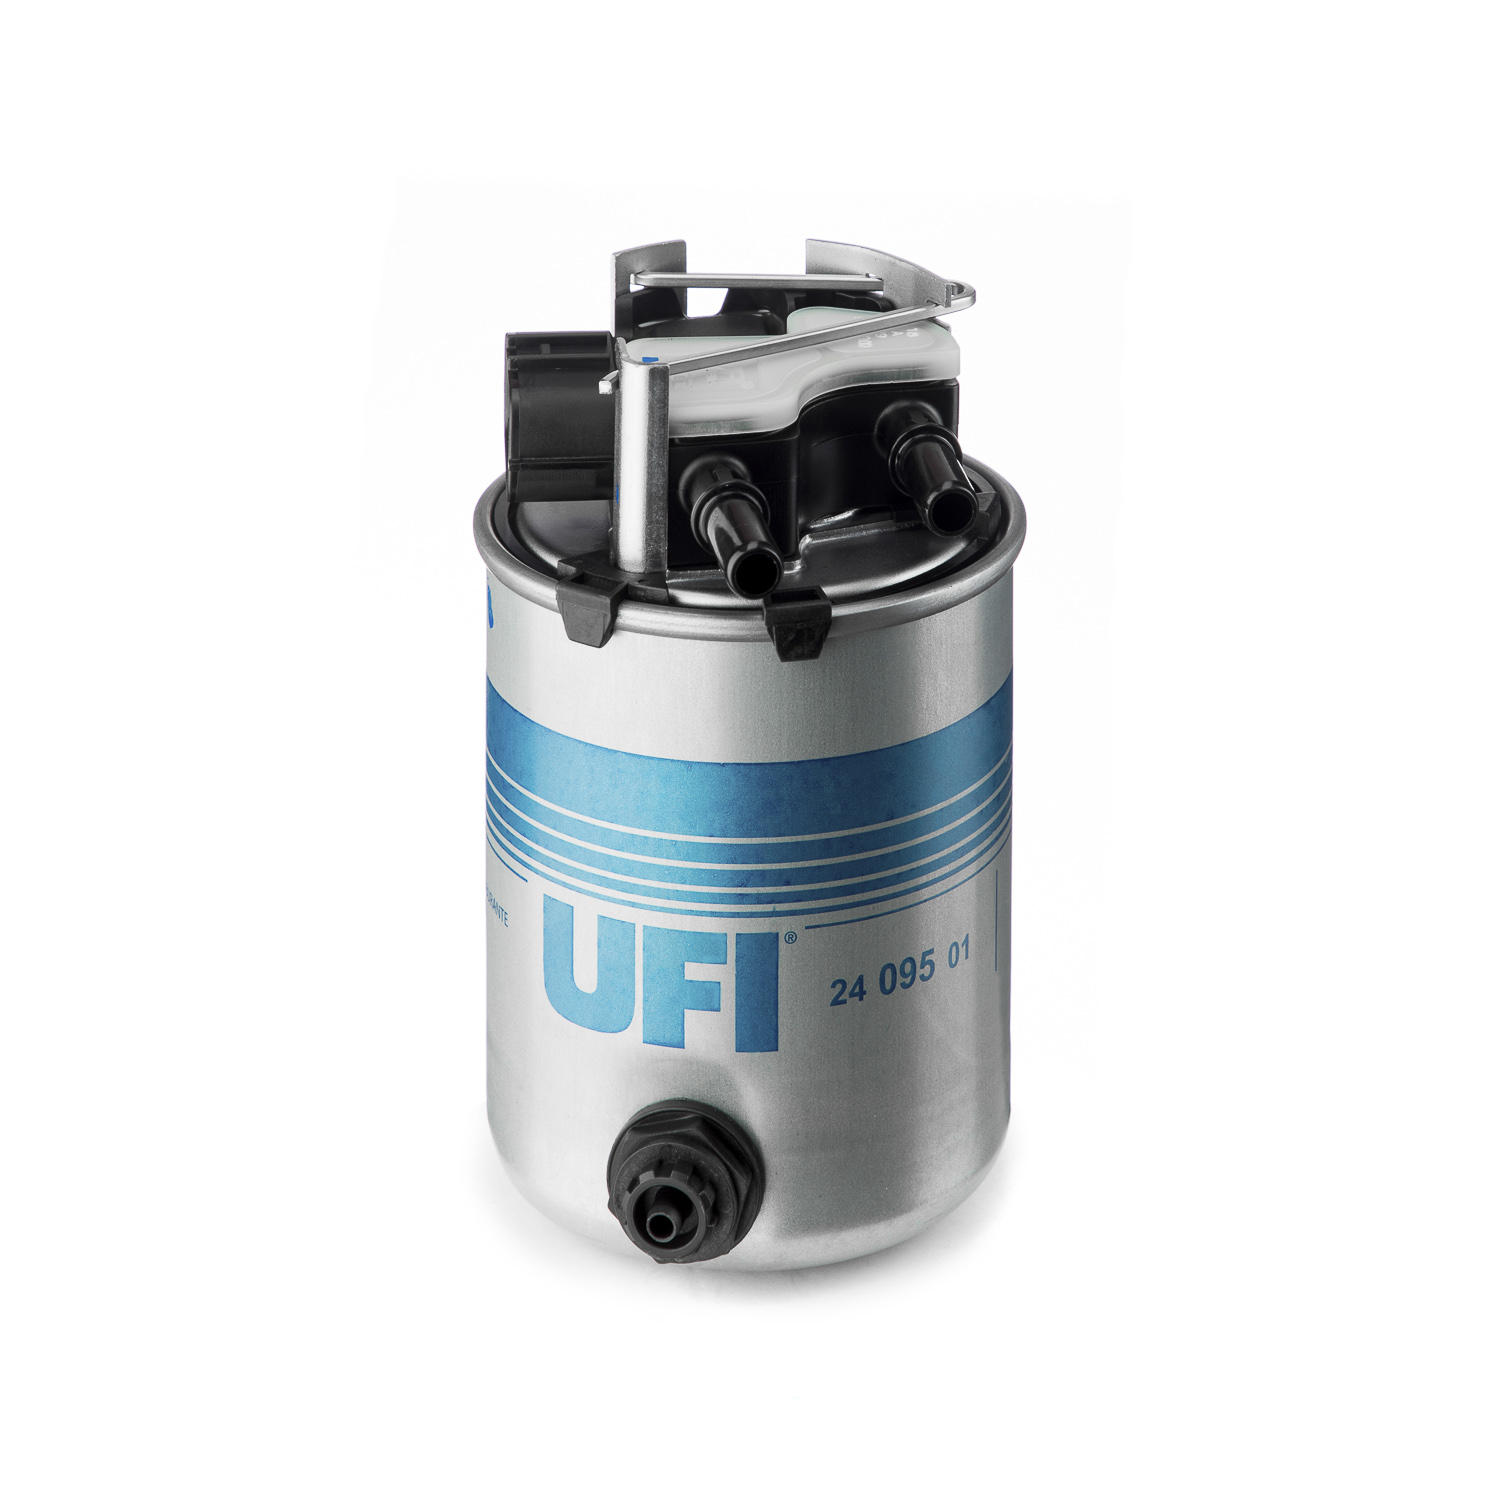 UFI  yakit filtresi renault kadjar 15 dci16 dci 2015 oem montaj urun 2409501